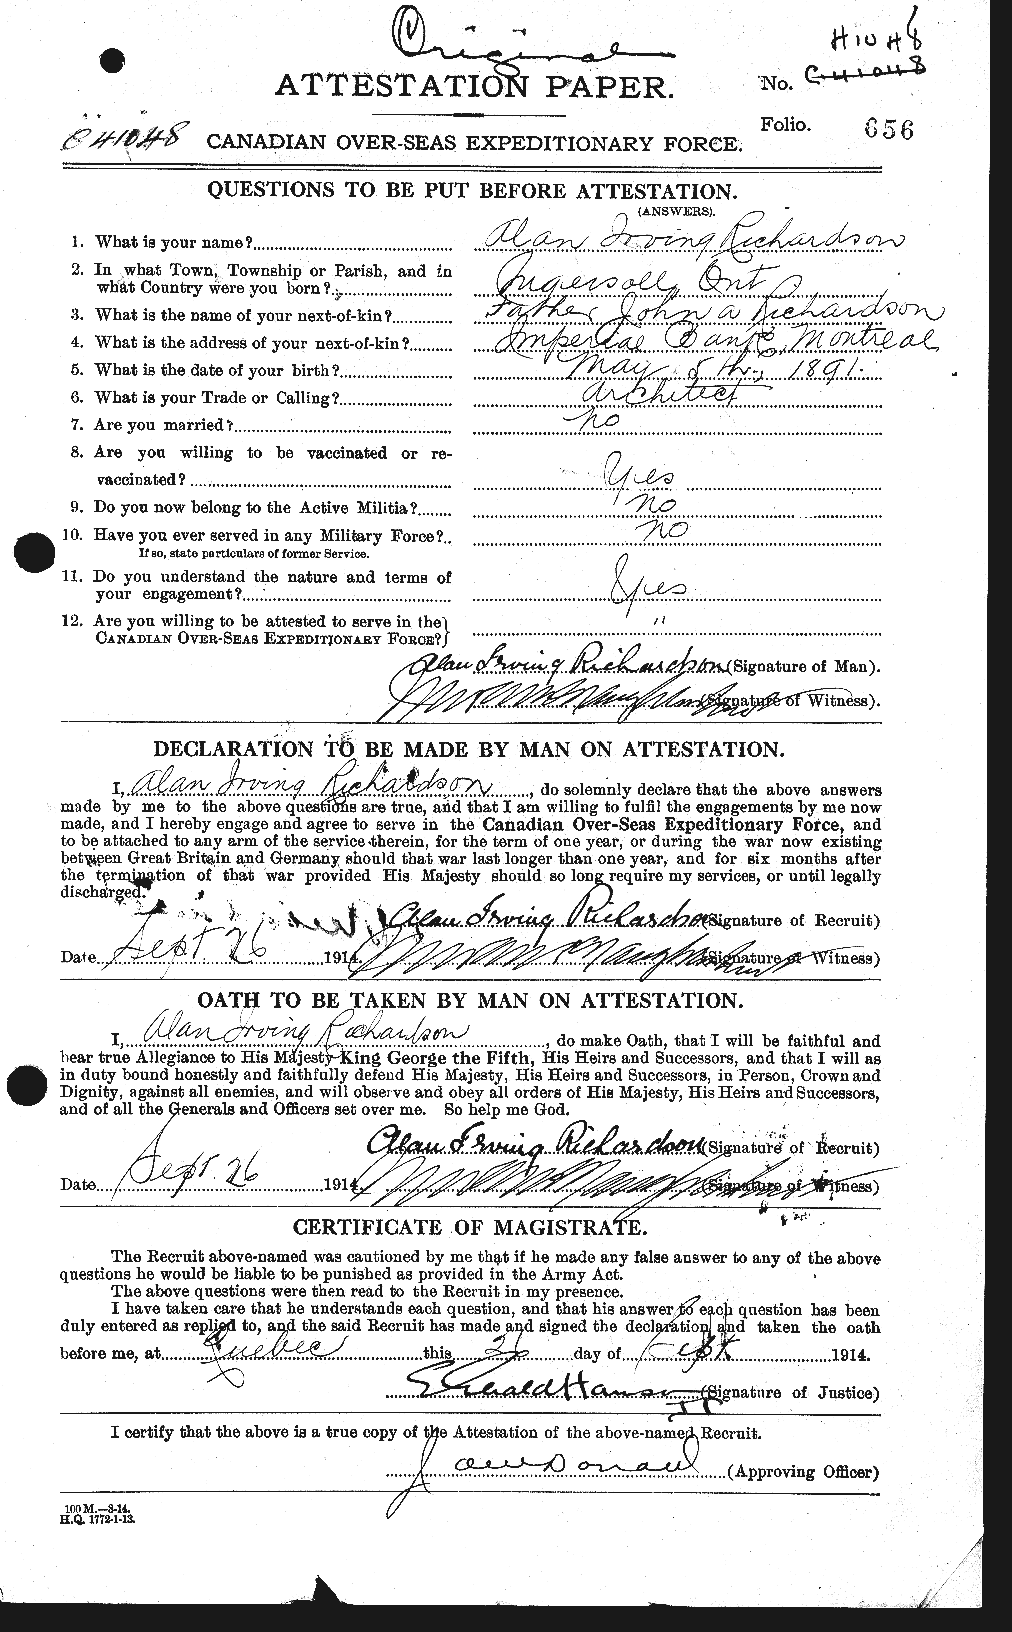 Dossiers du Personnel de la Première Guerre mondiale - CEC 603466a